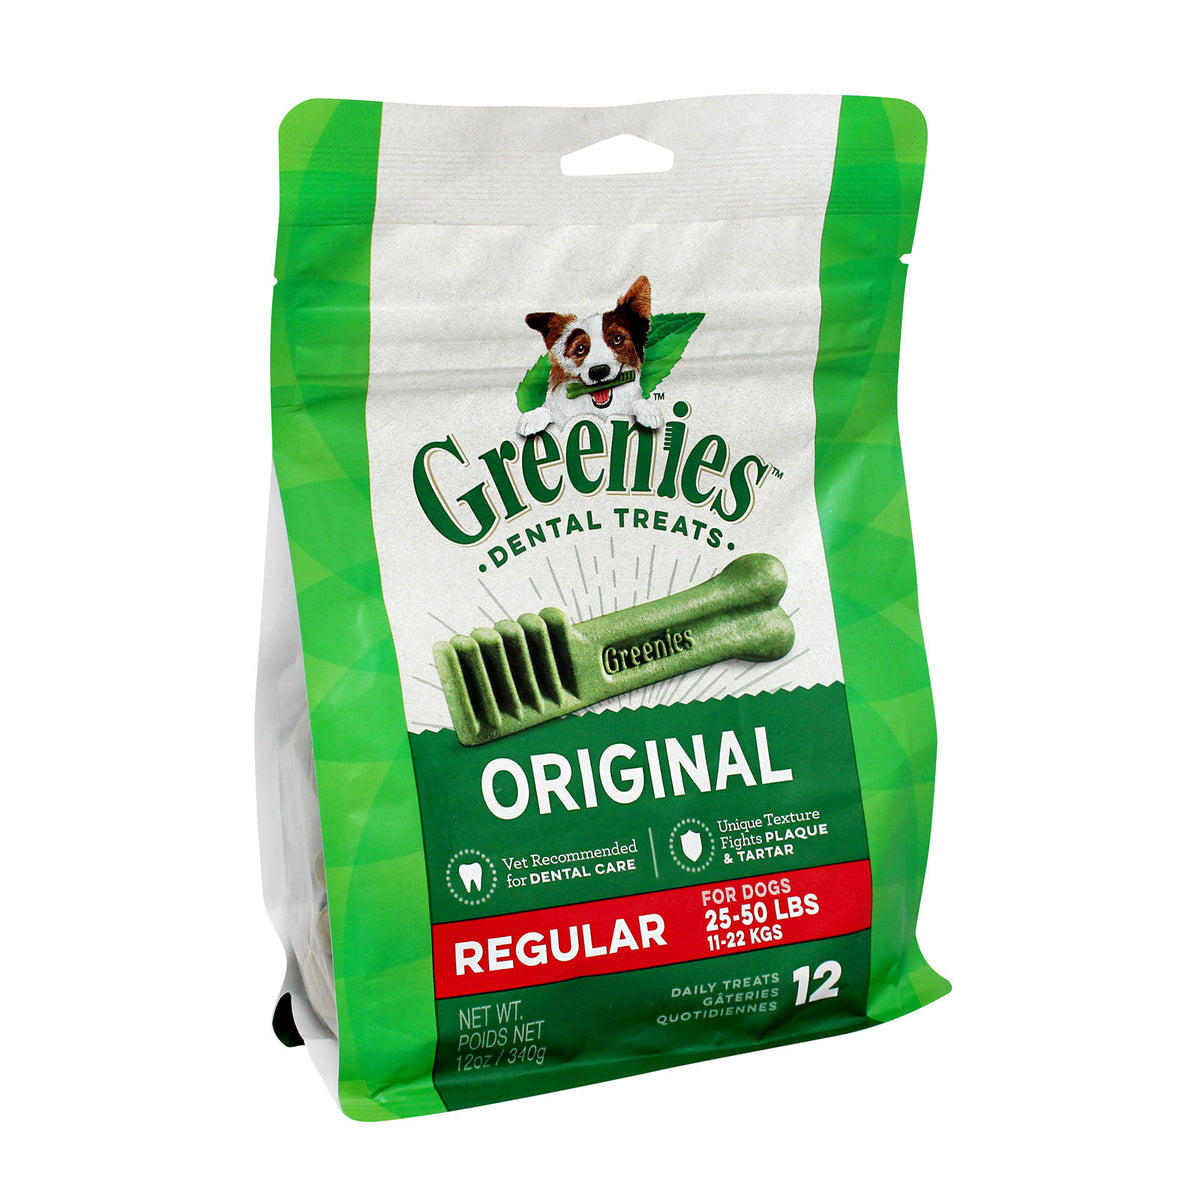 Greenies Dental Treats for Dogs - Original